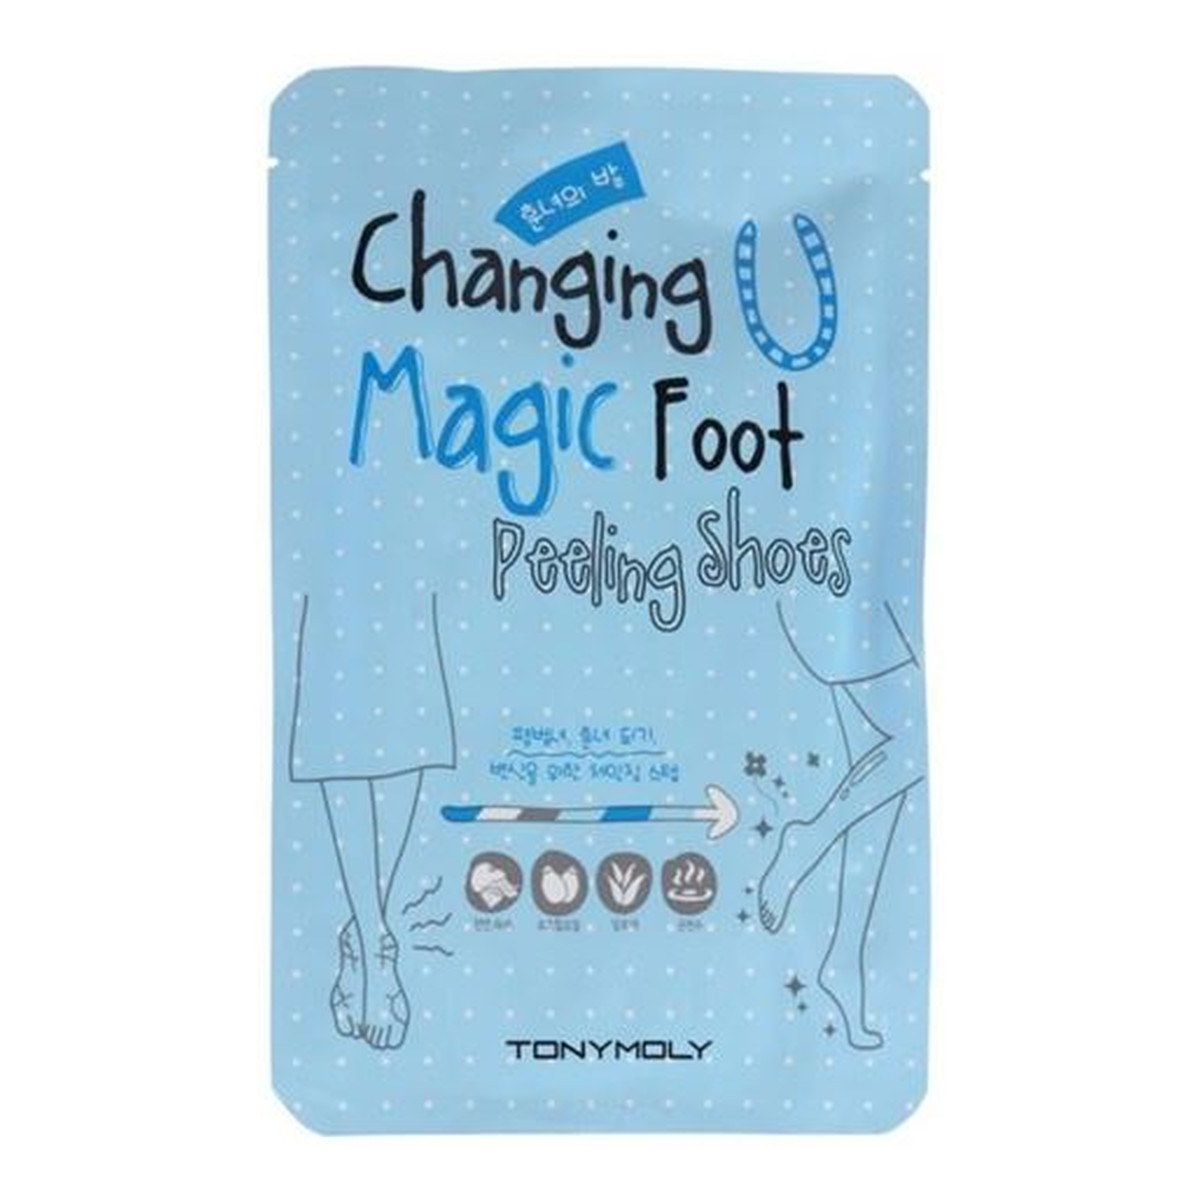 Tony Moly Changing Magic Foot Peeling Shoes złuszczające skarpetki do stóp 17g